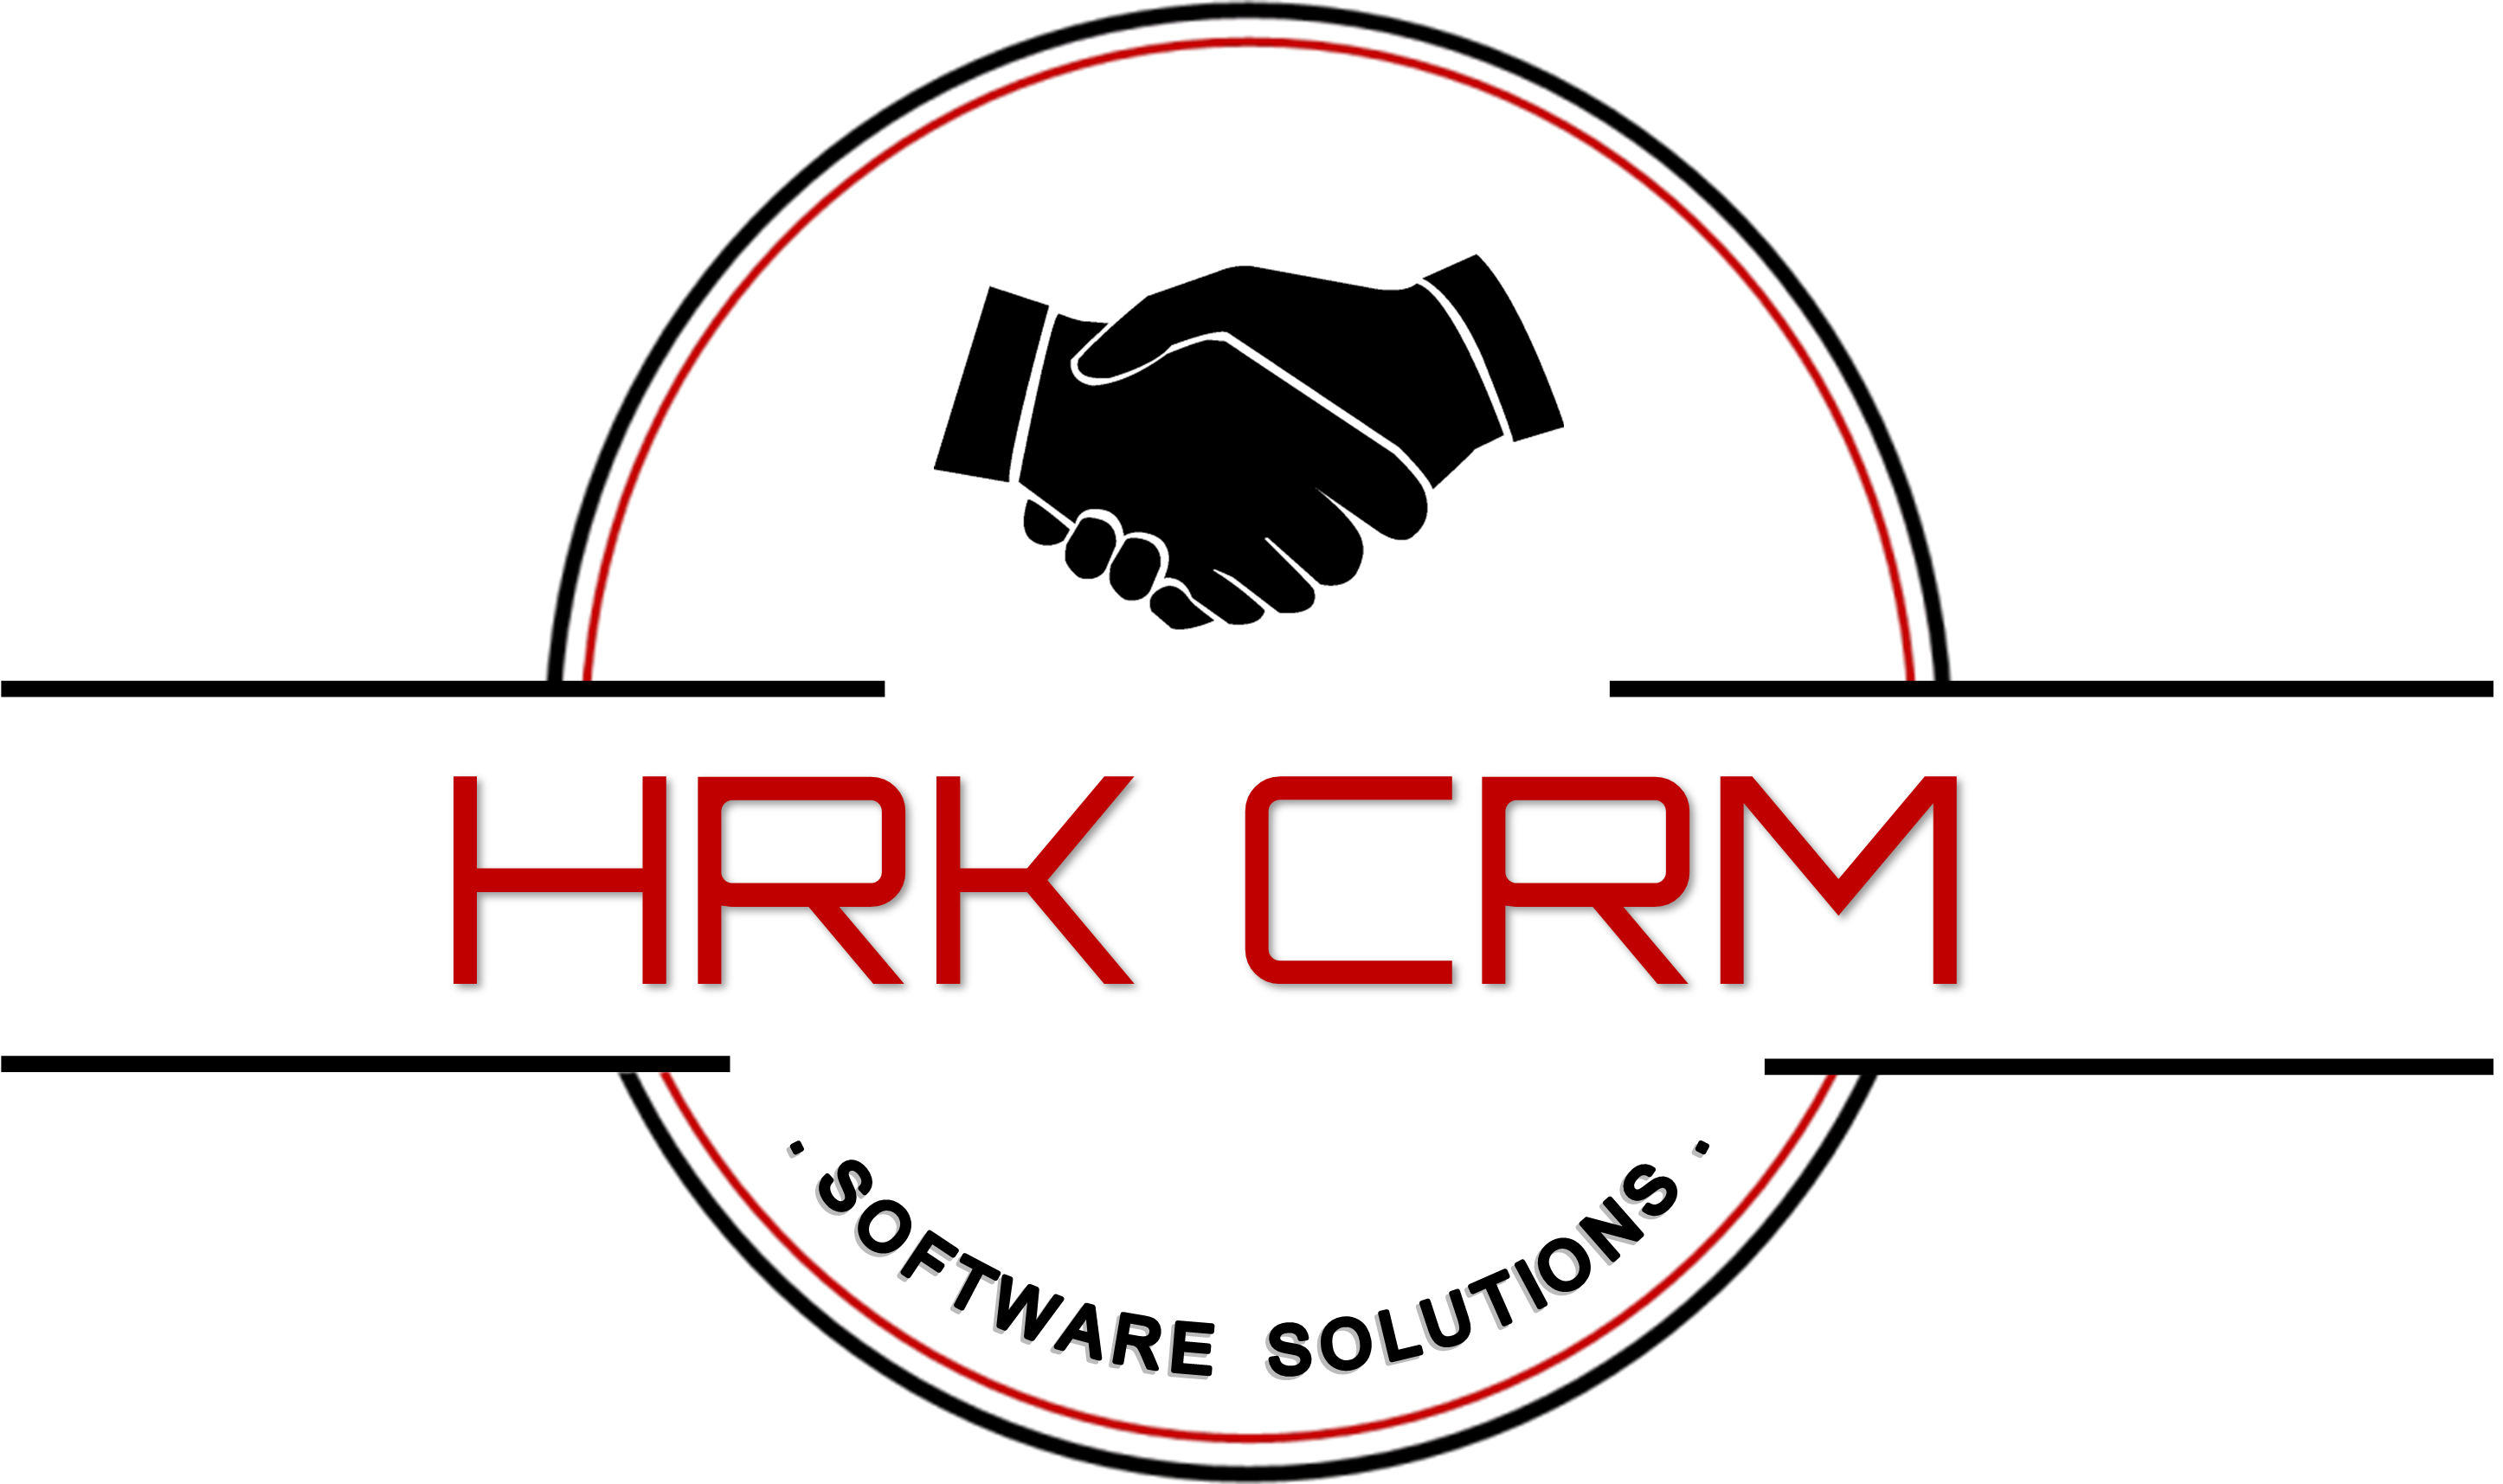 HRK_CRM